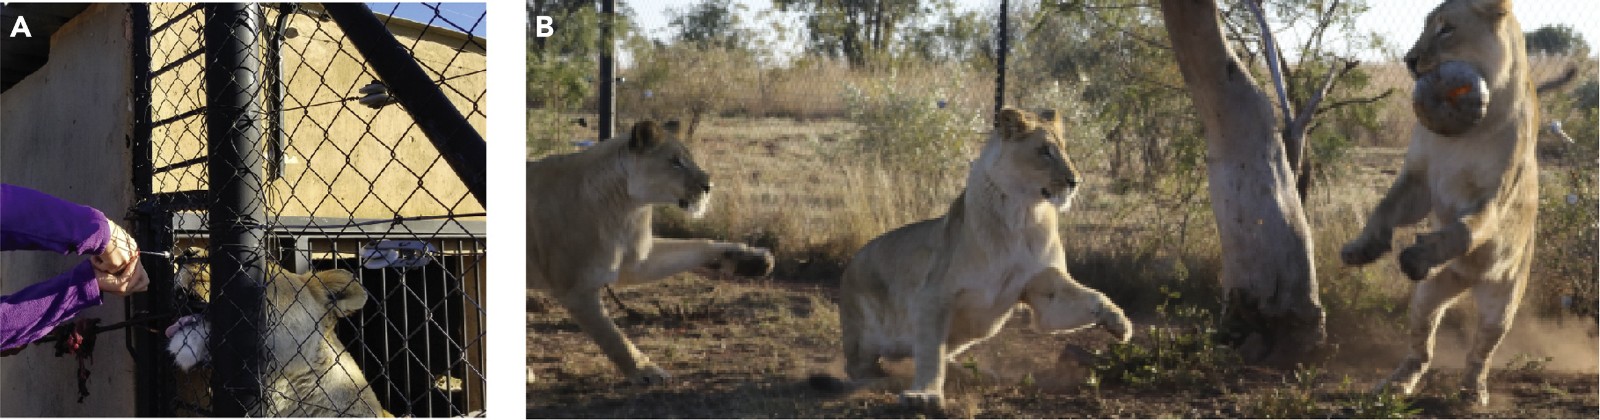 《iScience》杂志：“爱的荷尔蒙”催产素能让凶猛的狮子放松警惕